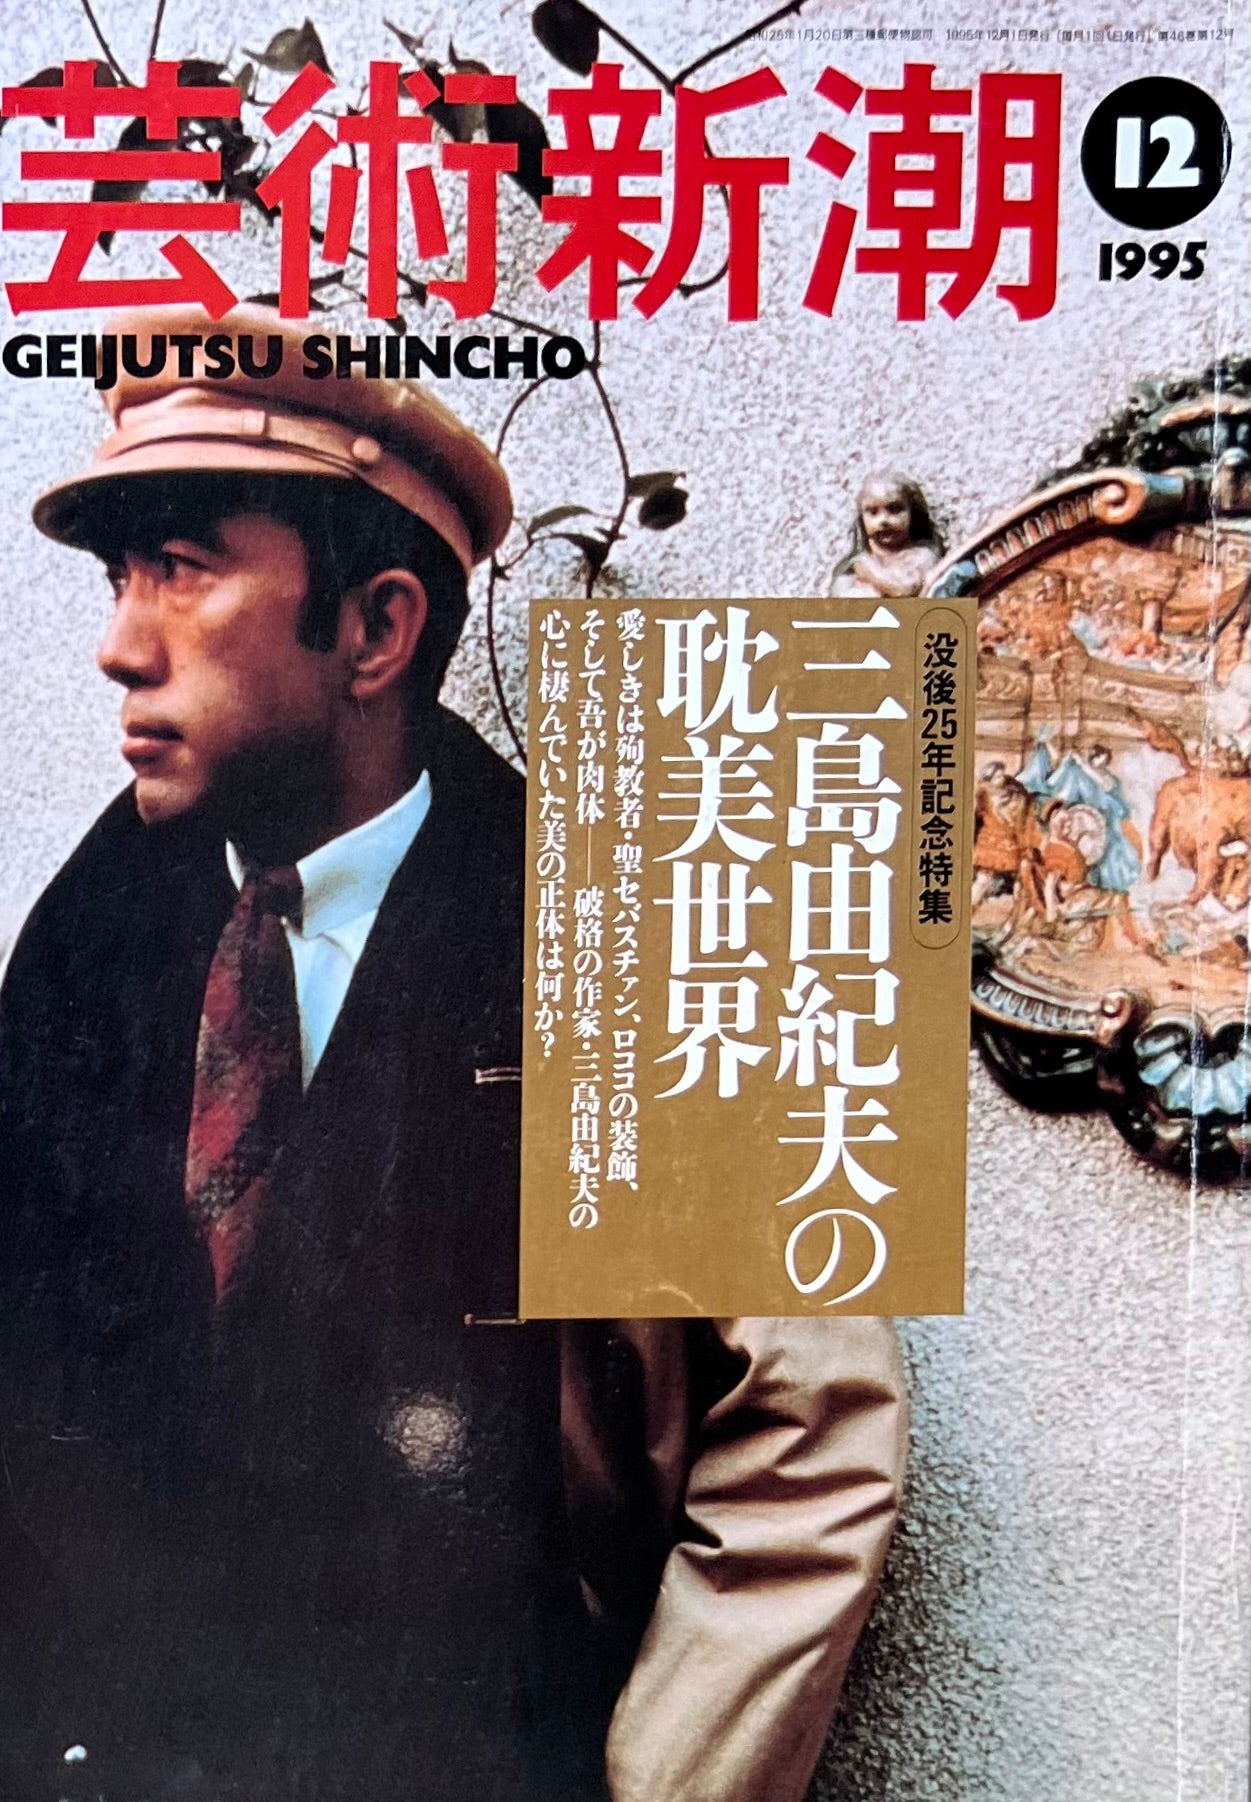 芸術新潮 1995年12月号 三島由紀夫の恥美世界 – smokebooks shop